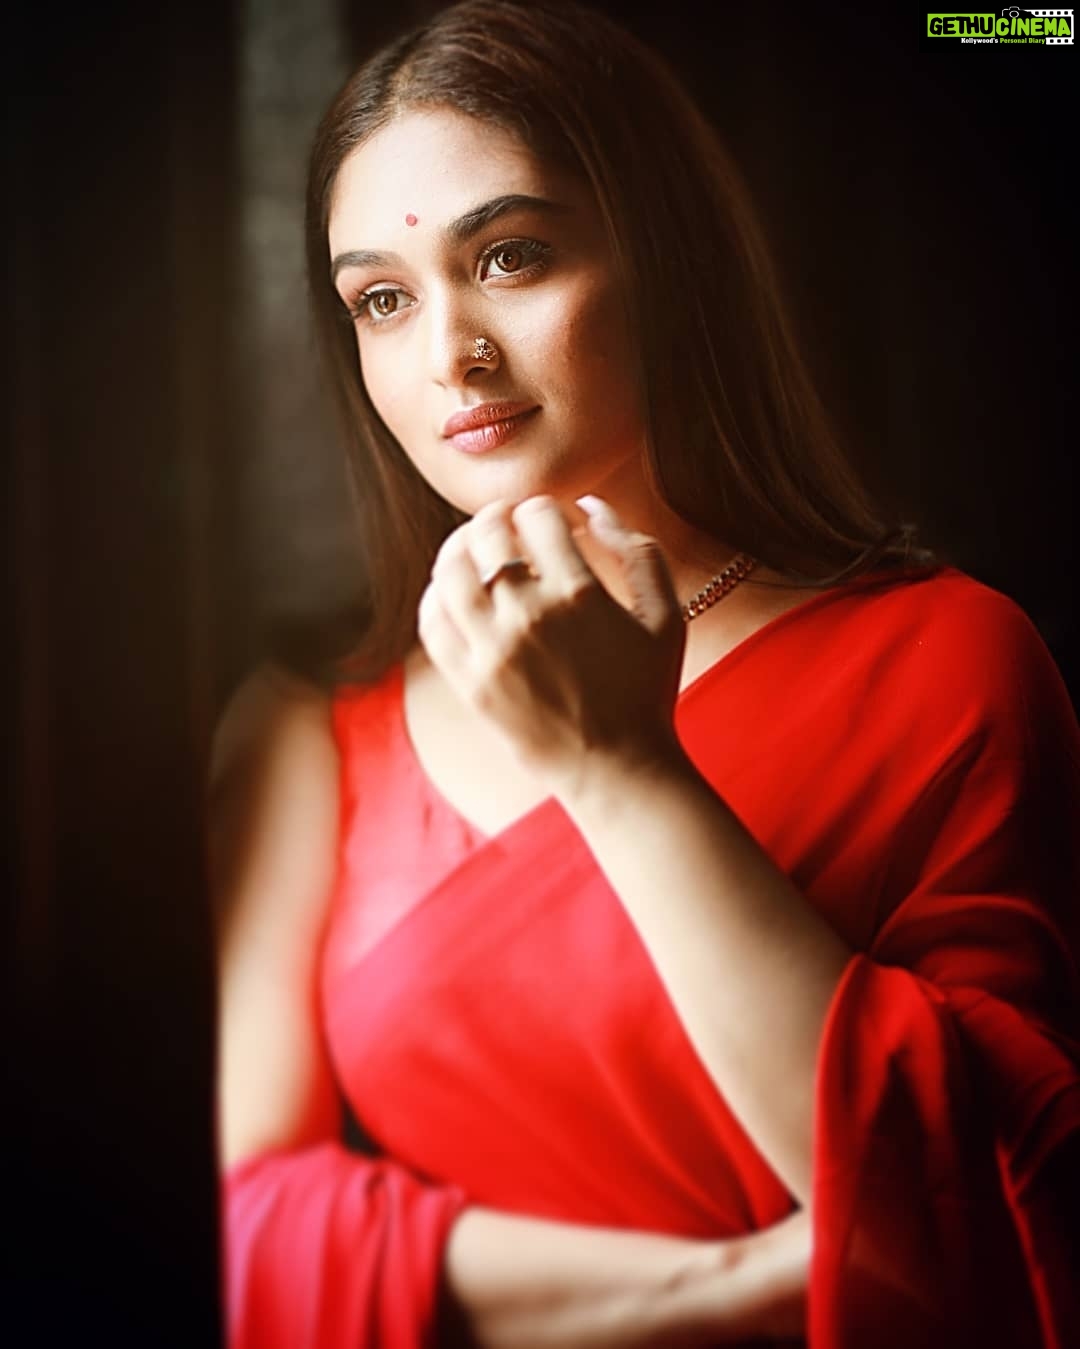 Actress Prayaga Martin HD Photos and Wallpapers October 2019 - Gethu Cinema